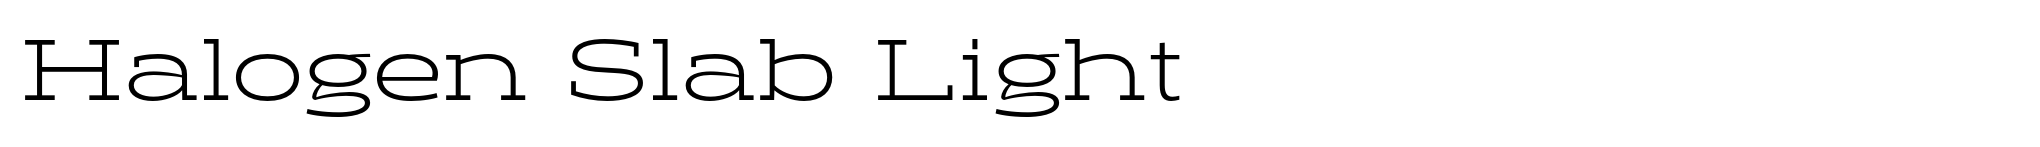 Halogen Slab Light image